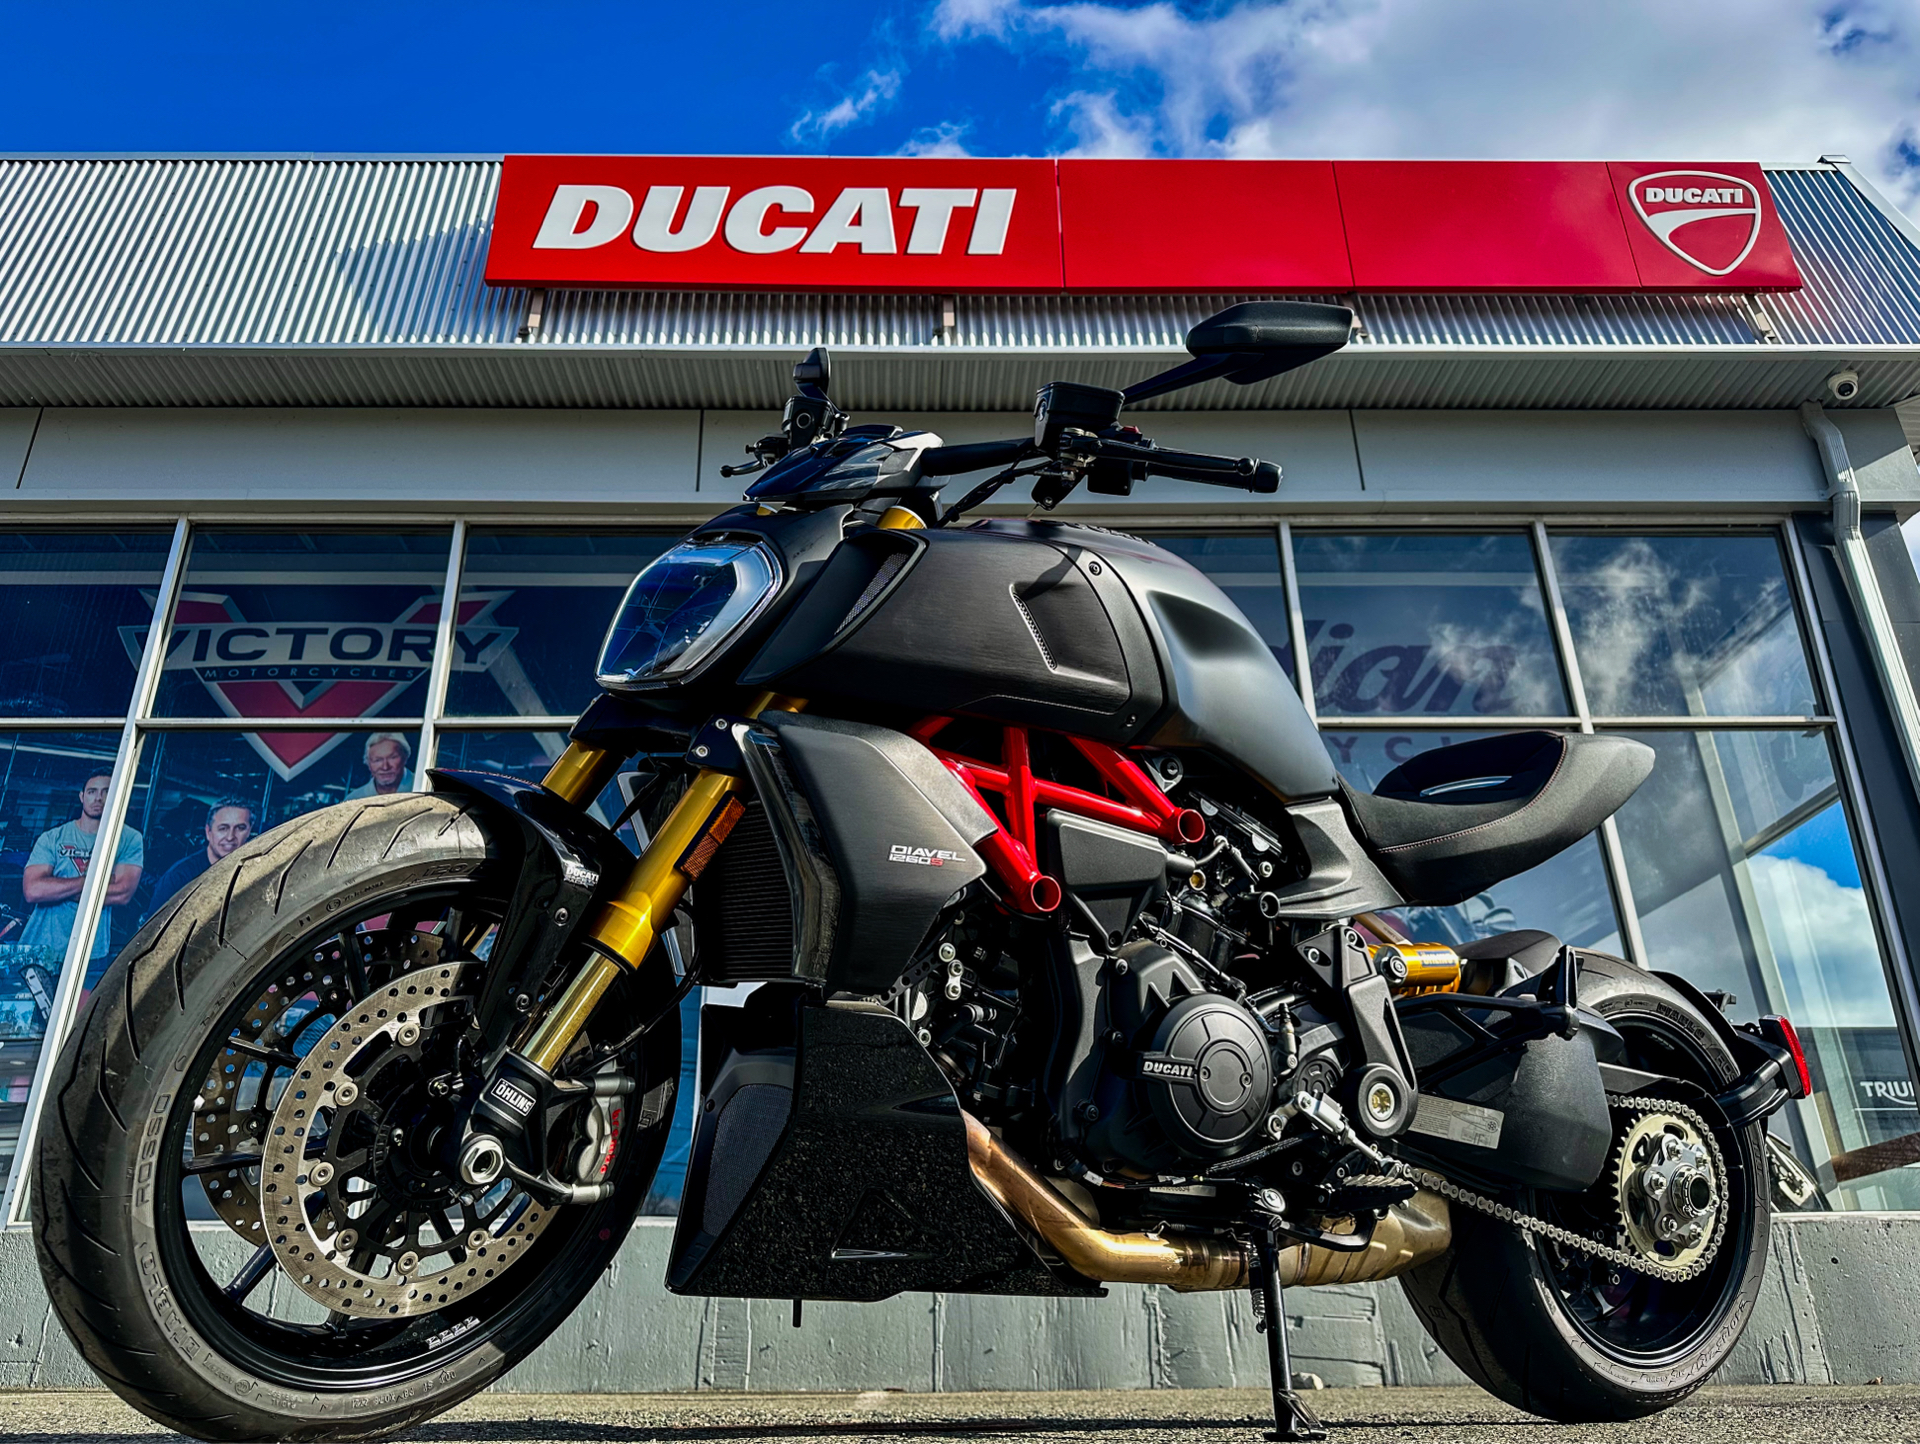 2022 Ducati Diavel 1260 S in Foxboro, Massachusetts - Photo 19